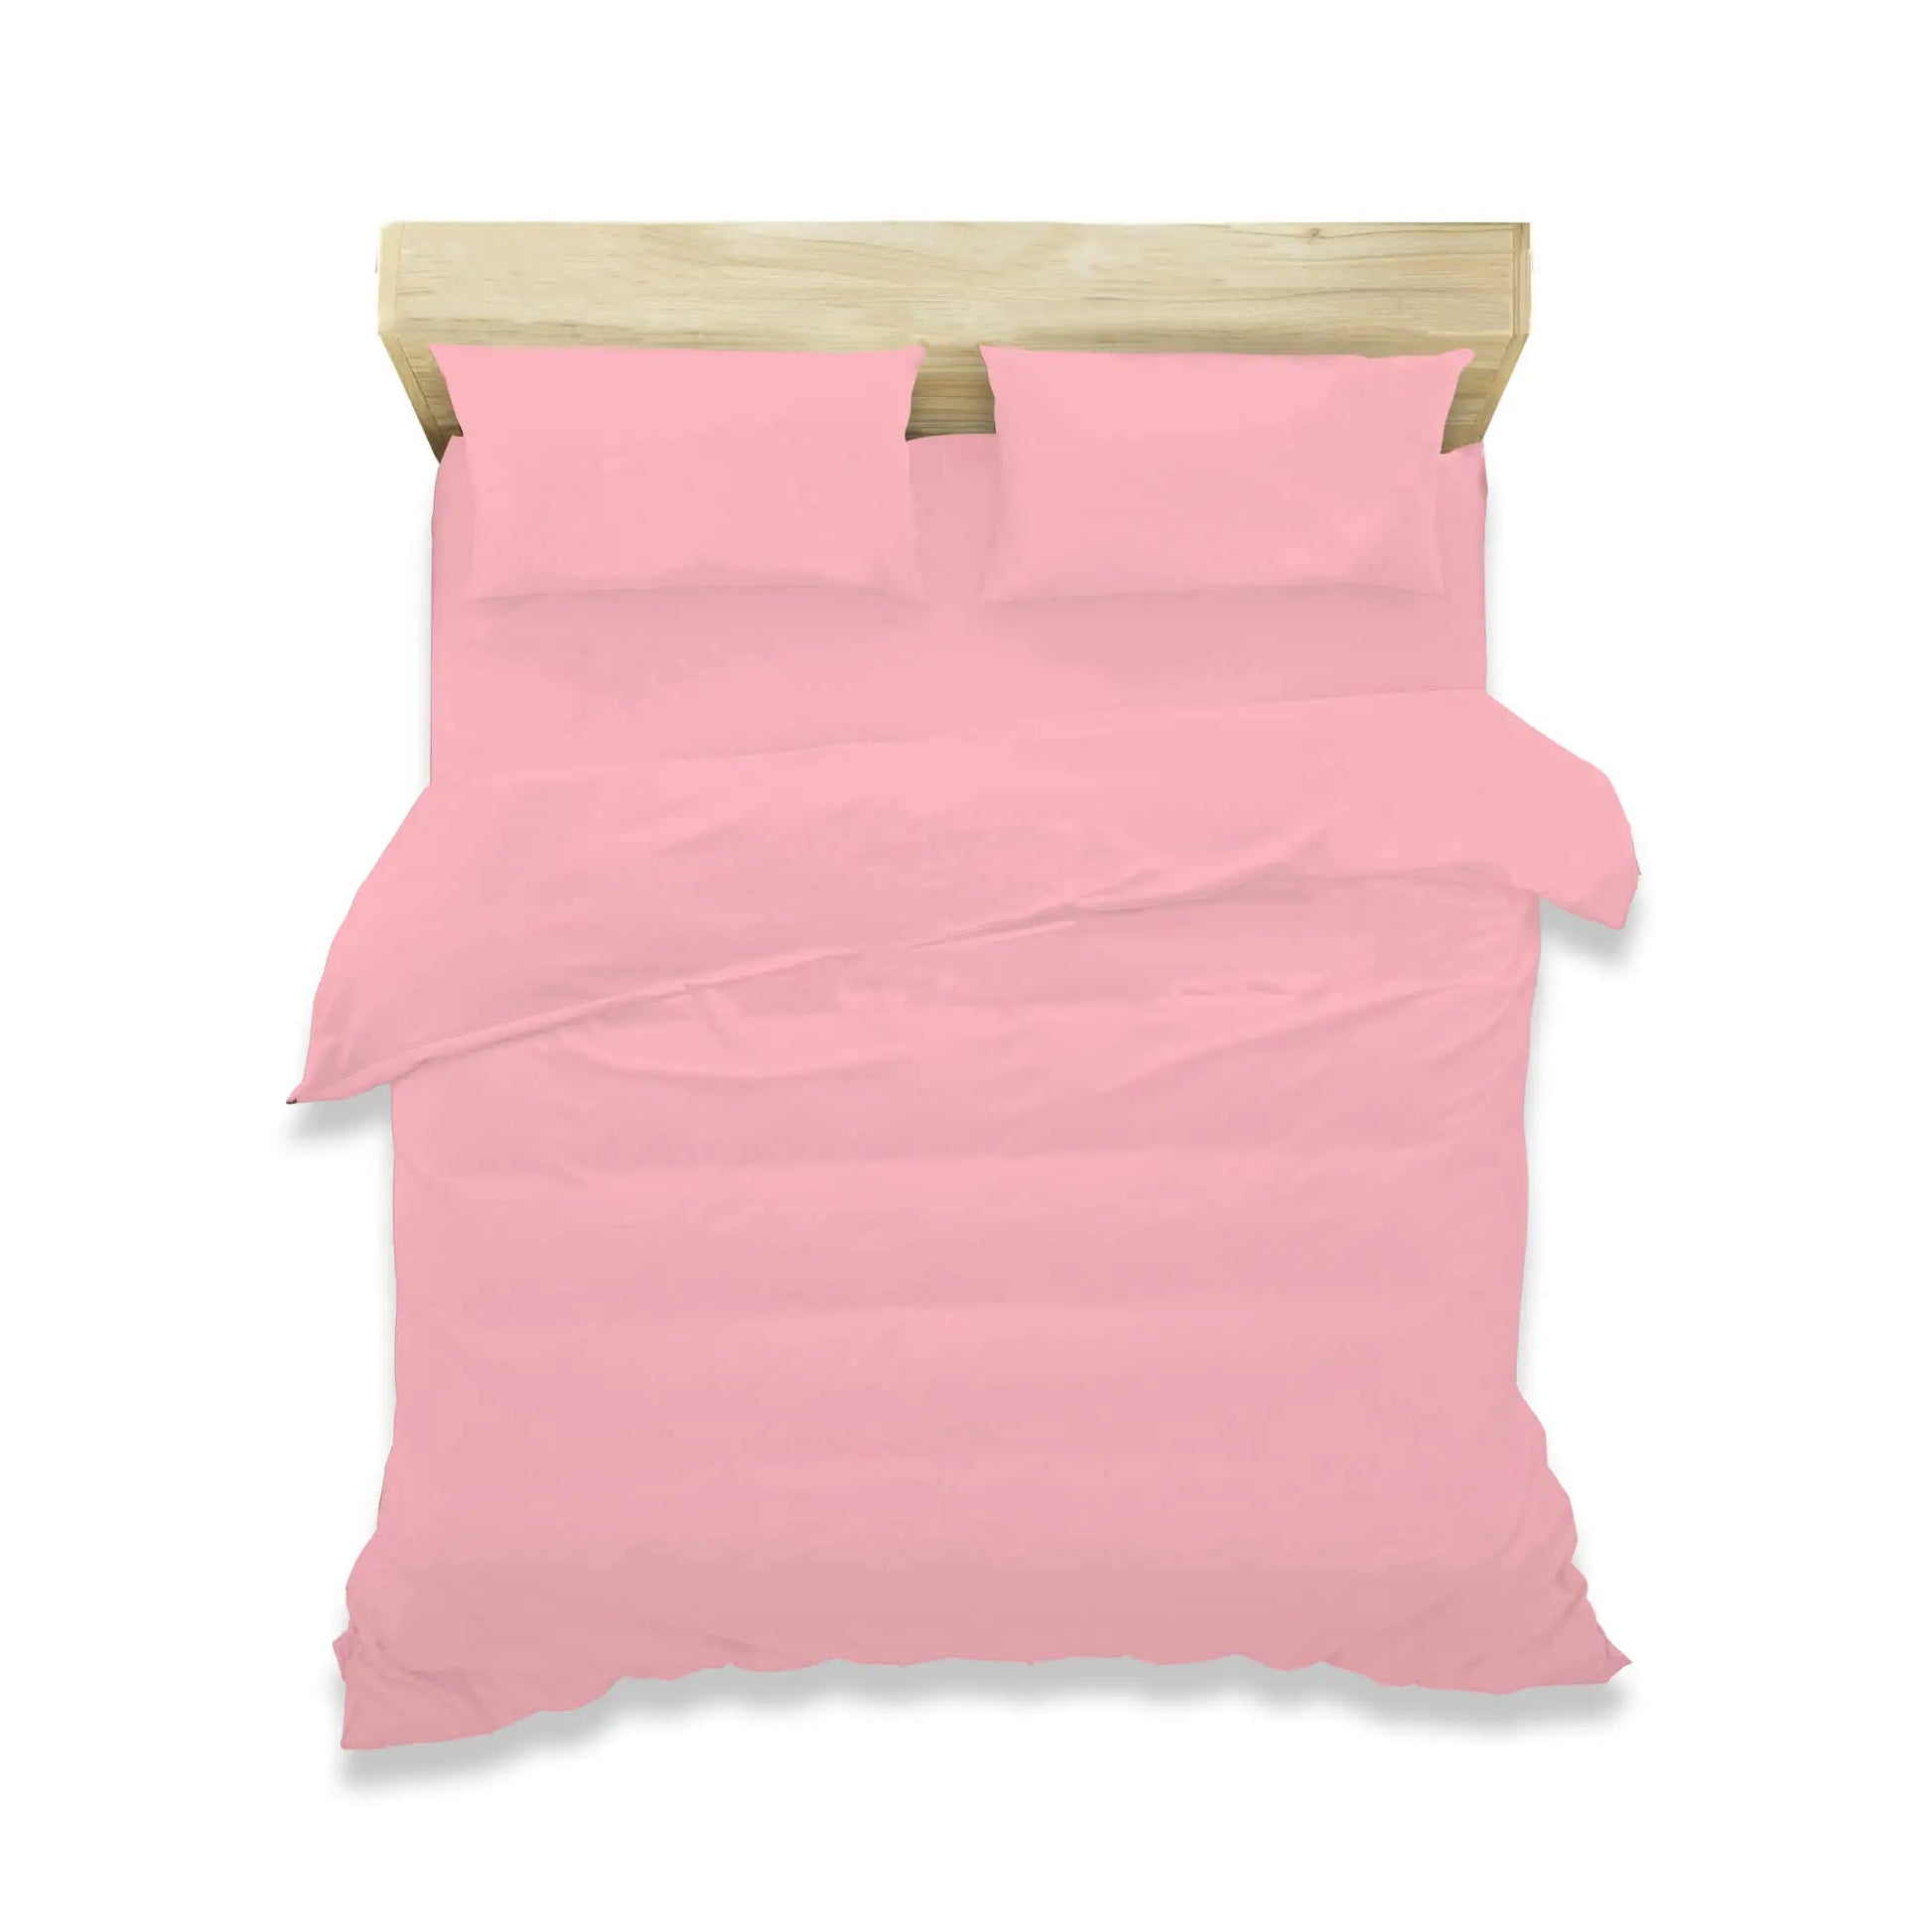 pink duvet cover bedding set